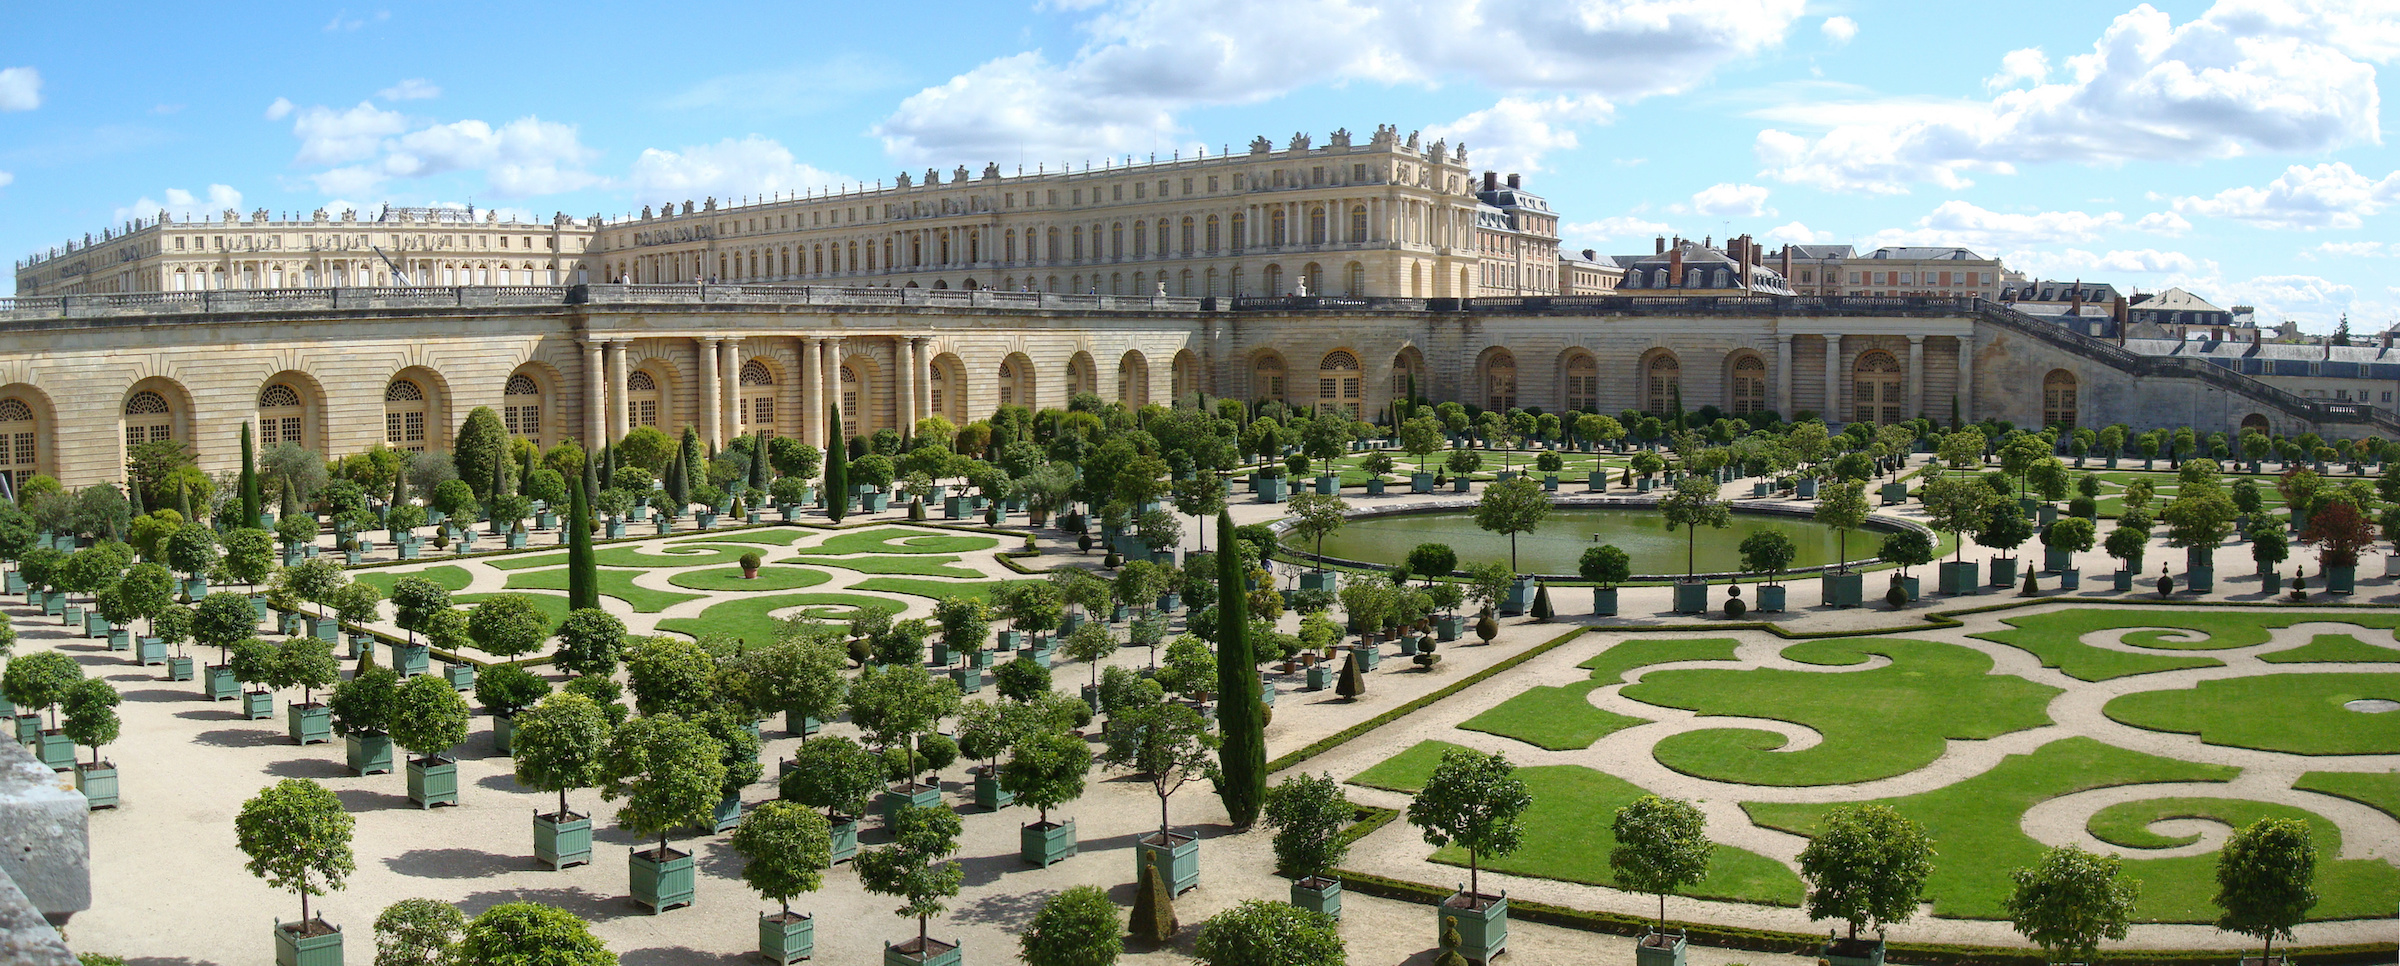 Le château de Versailles, France